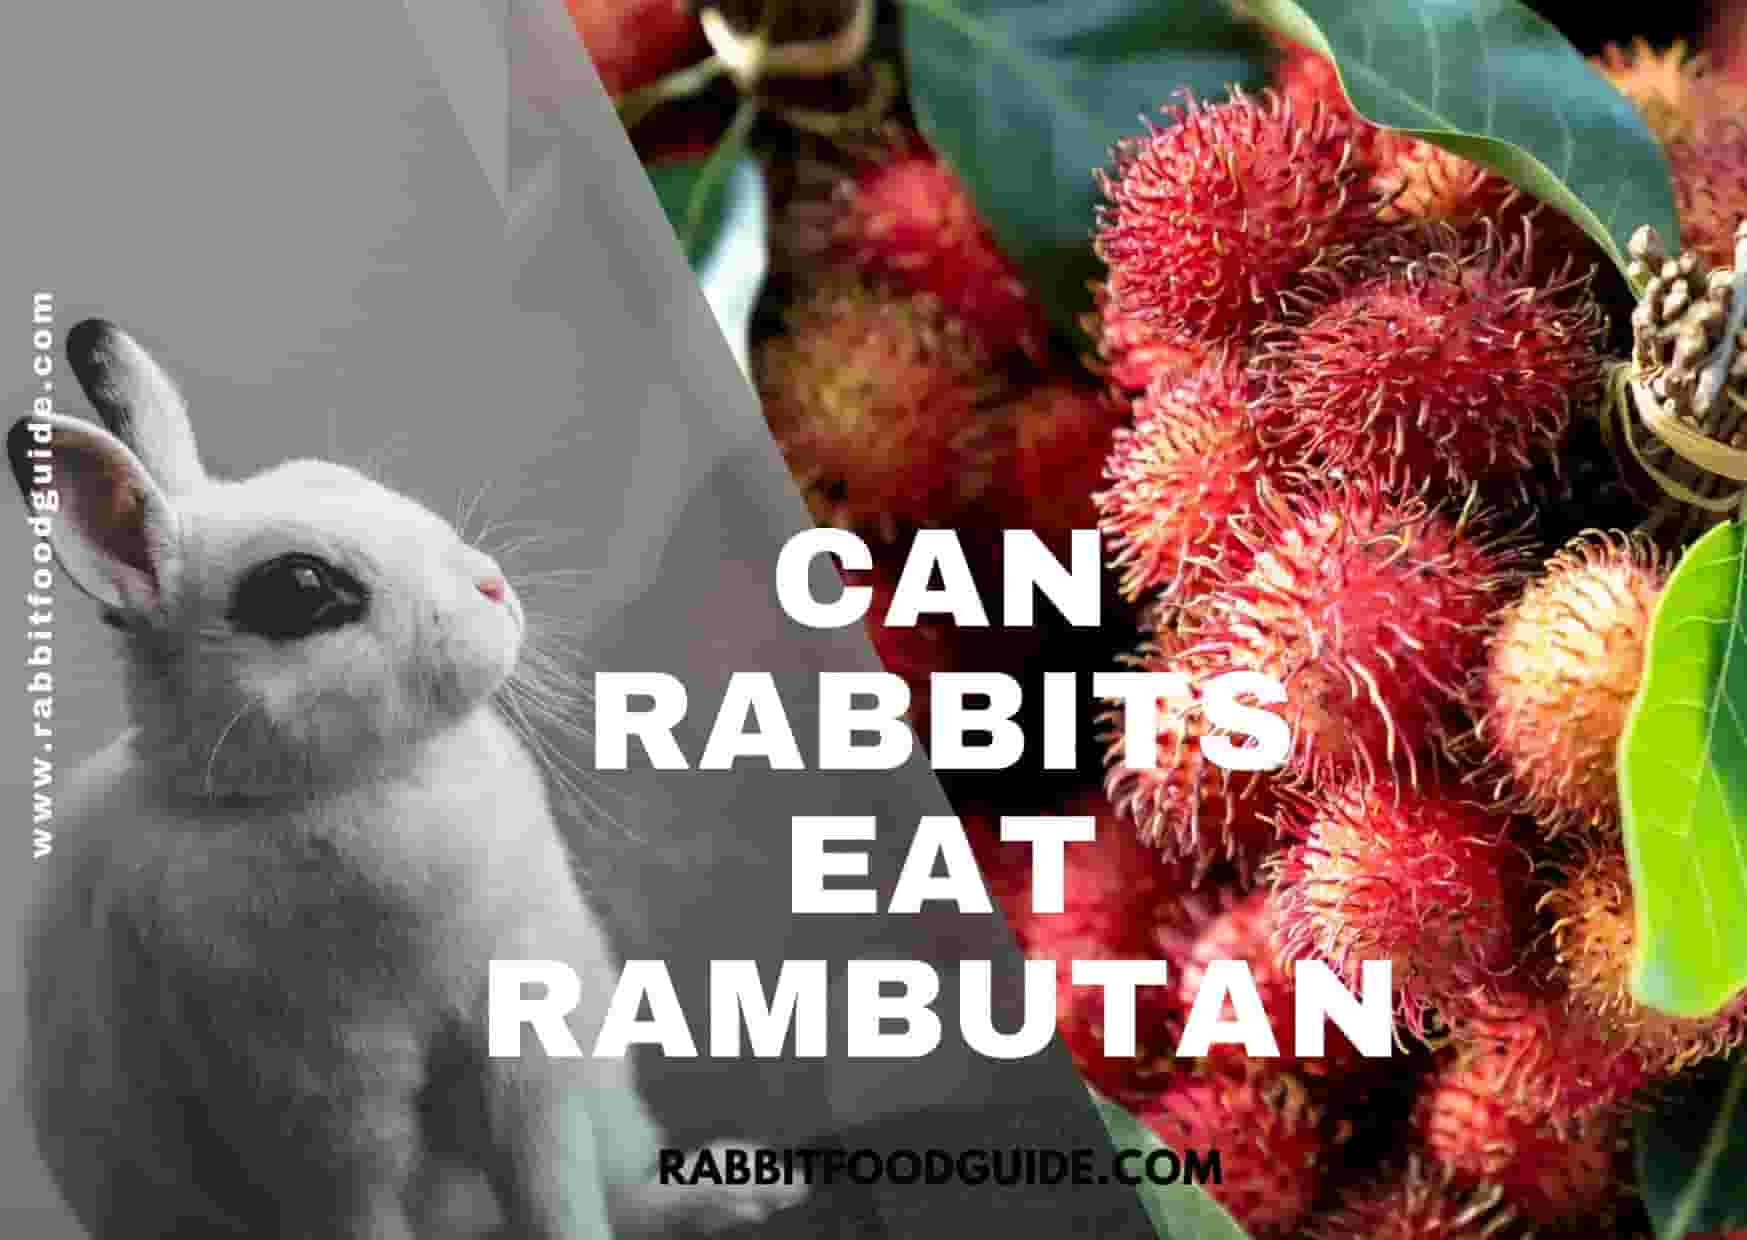 Can Rabbits eat rambuton